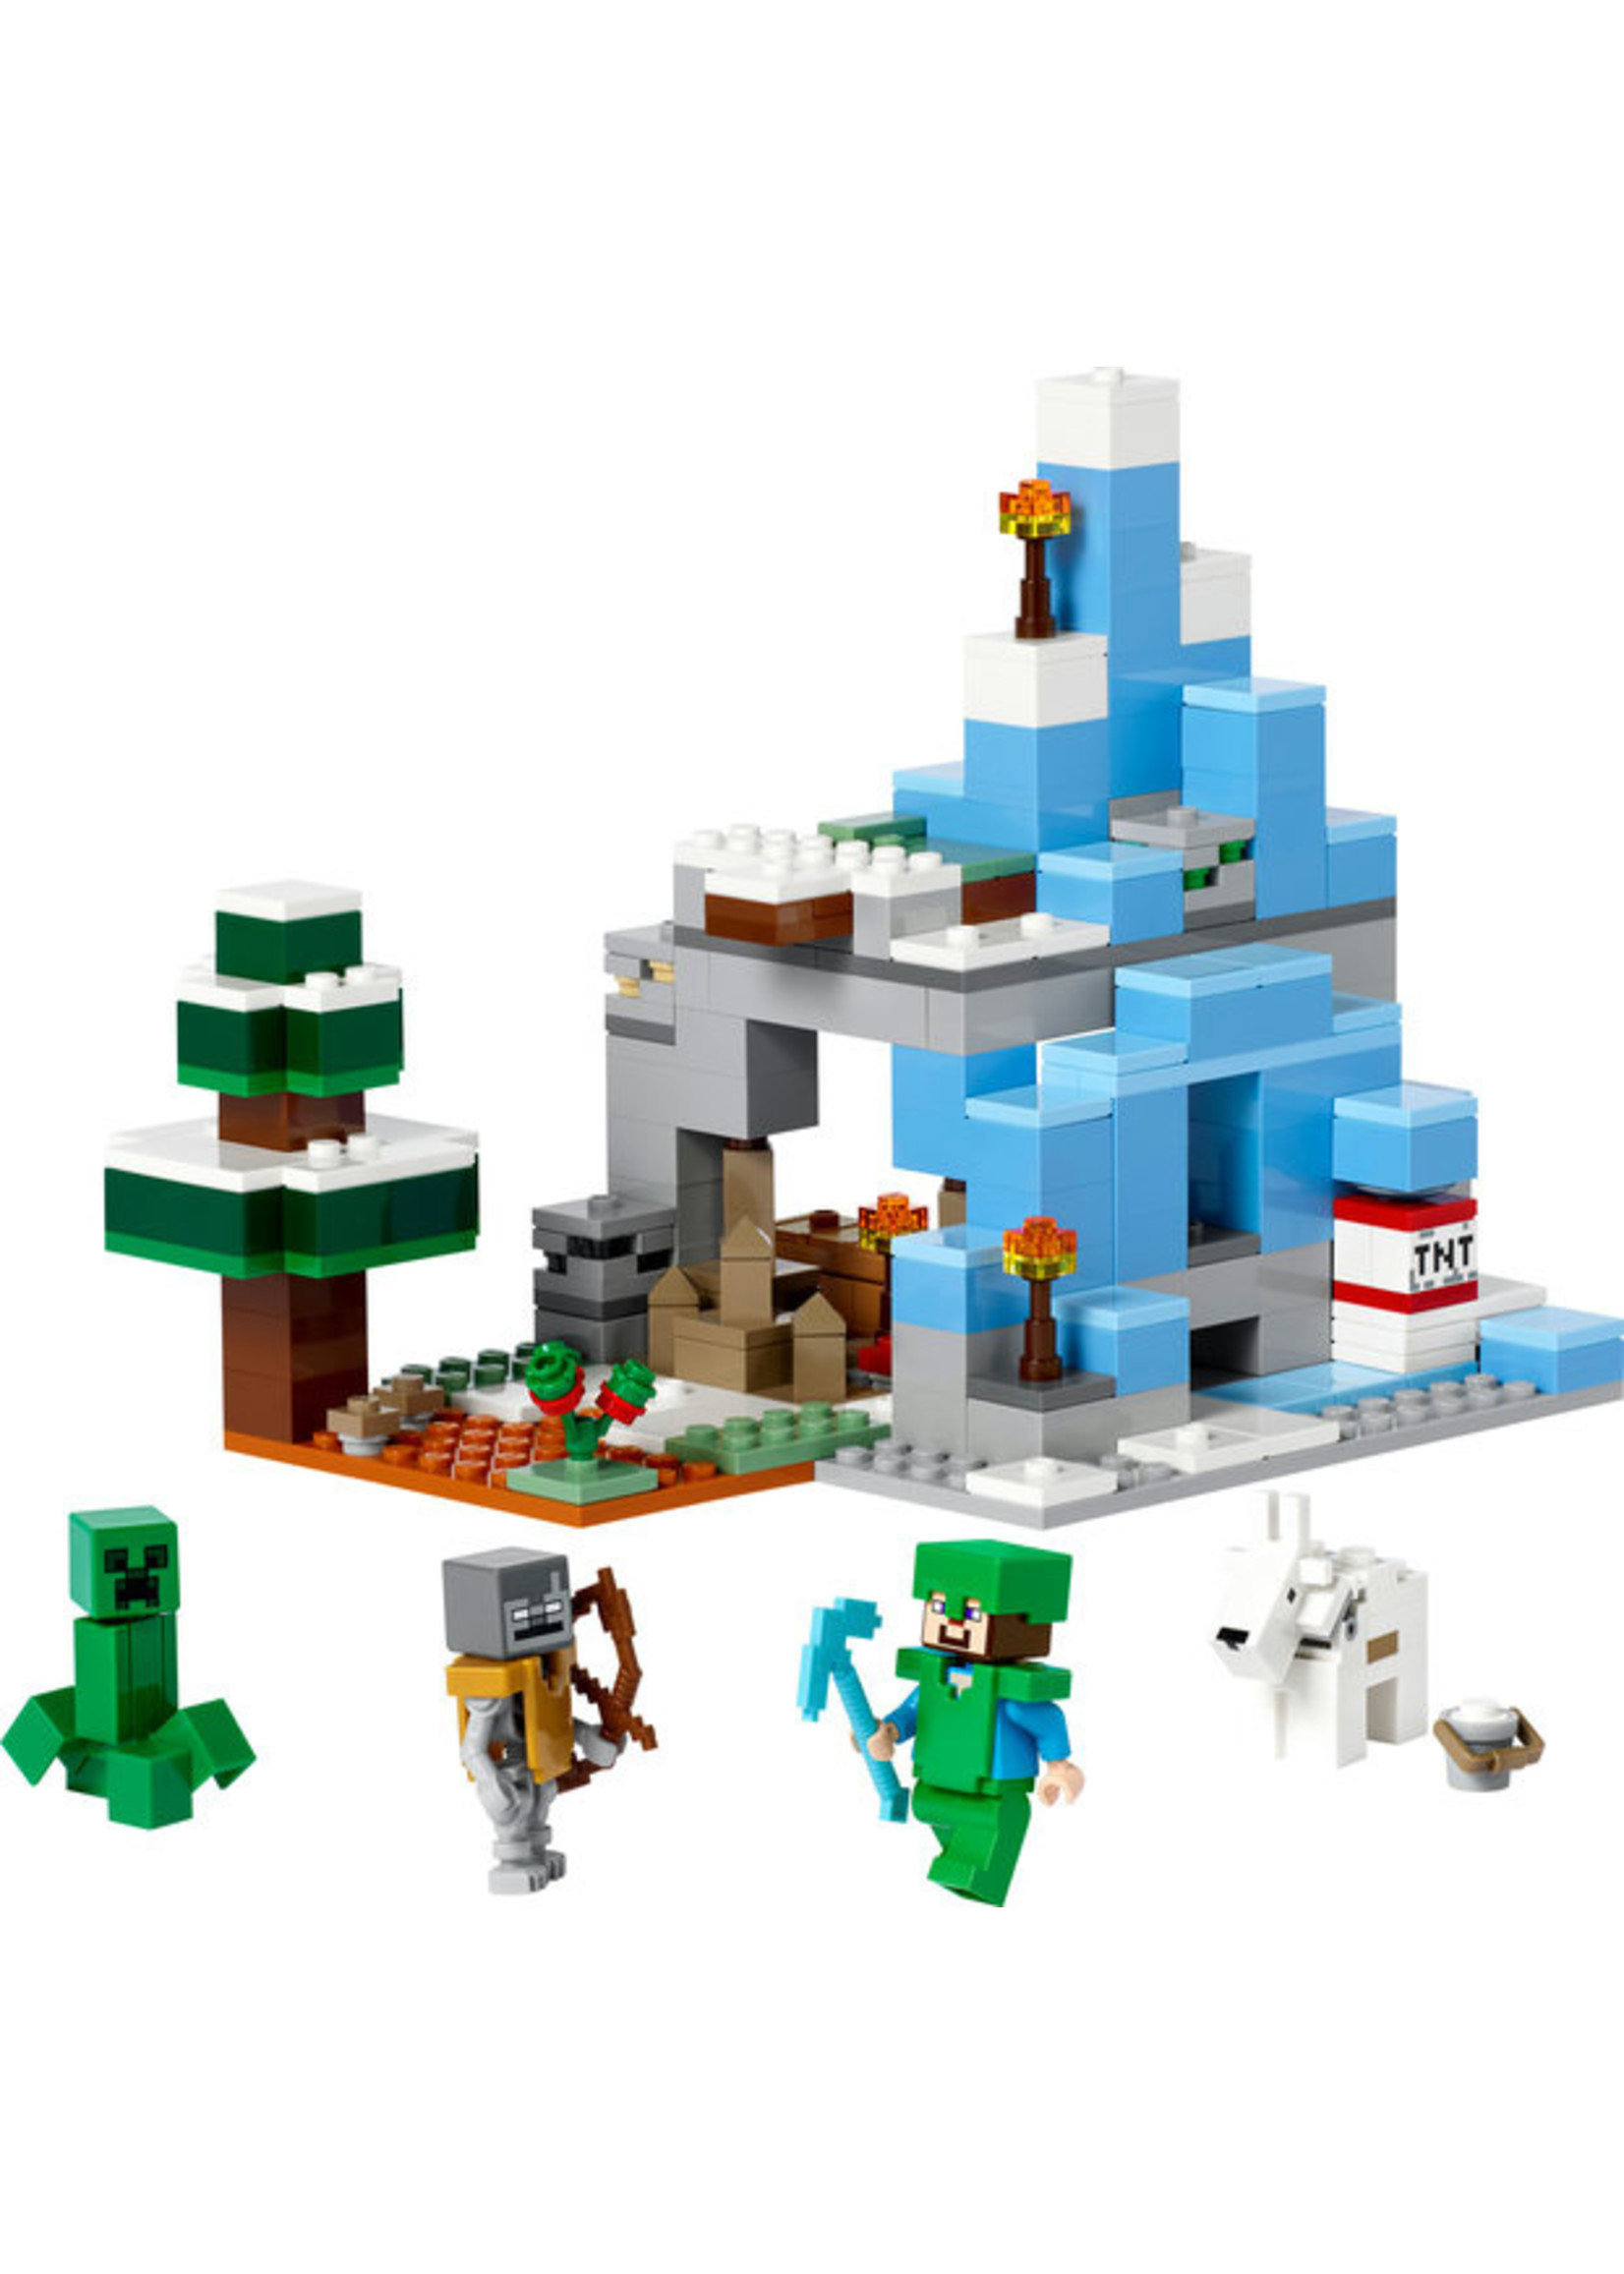 LEGO 21243 - The Frozen Peaks